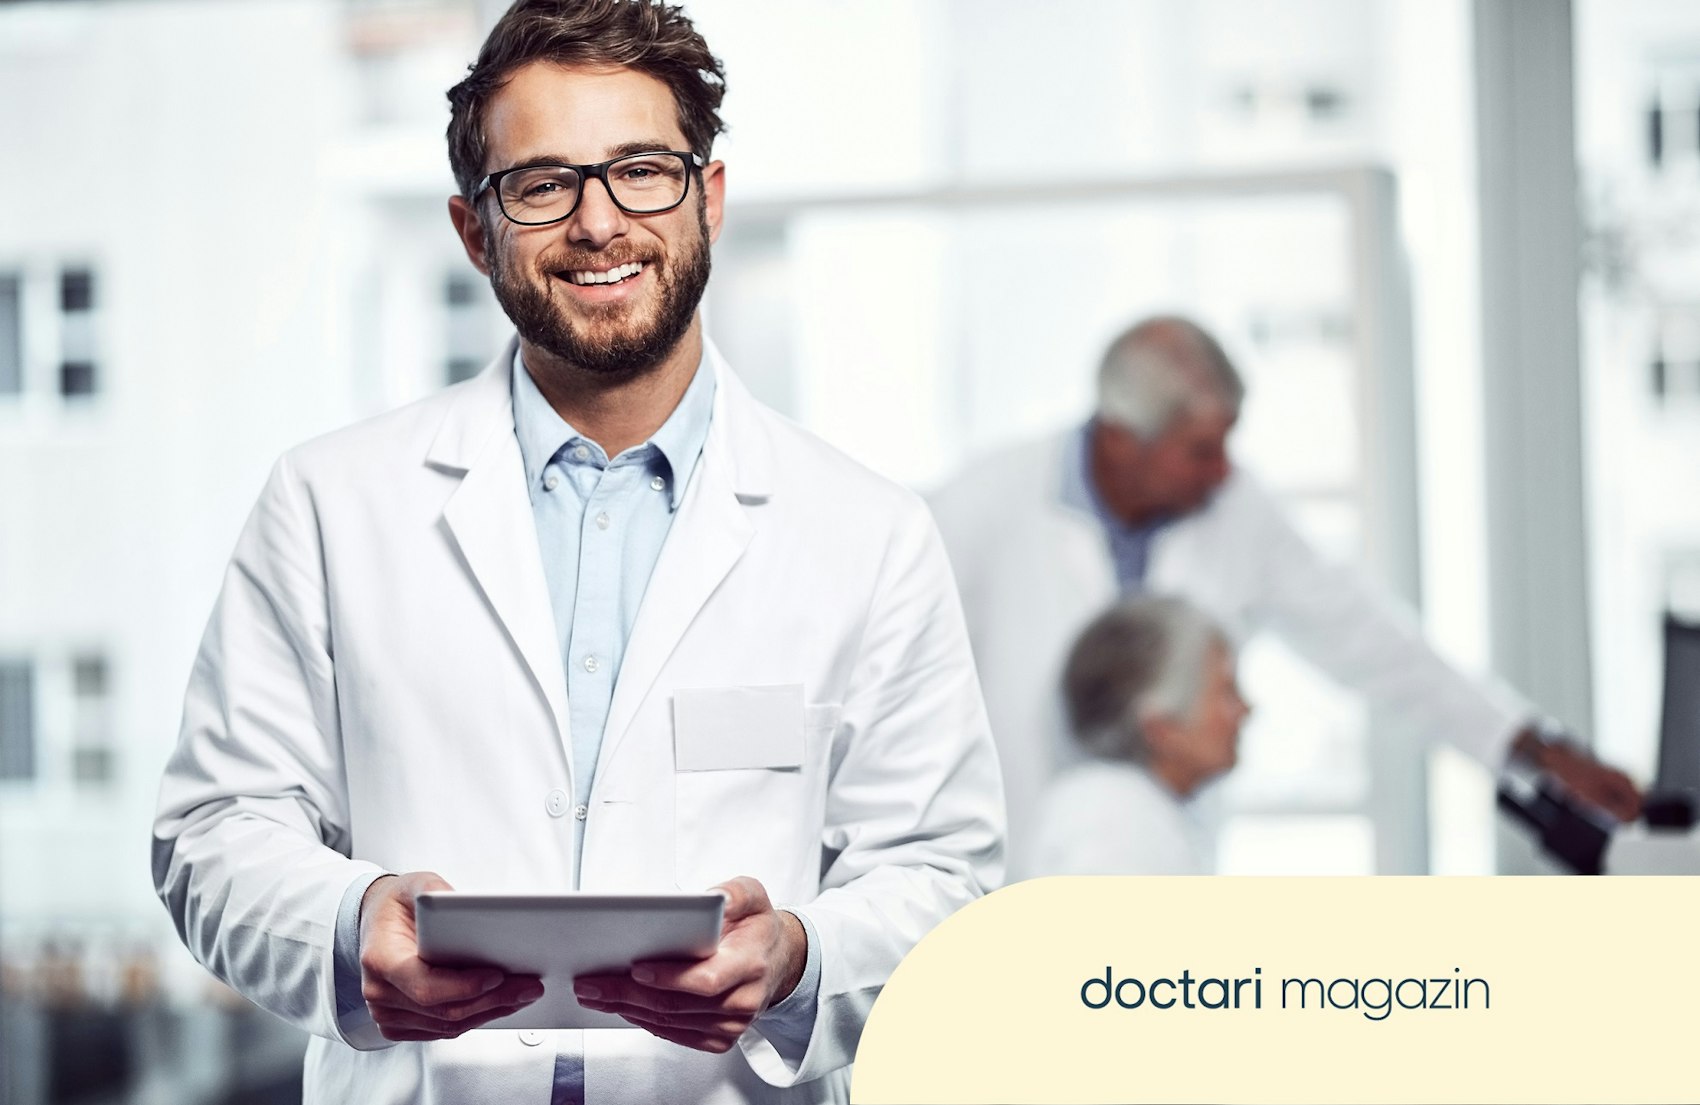 Junger Arzt mit Brille hält ein Tablet in der Hand und blickt freundlich in die Kamera.